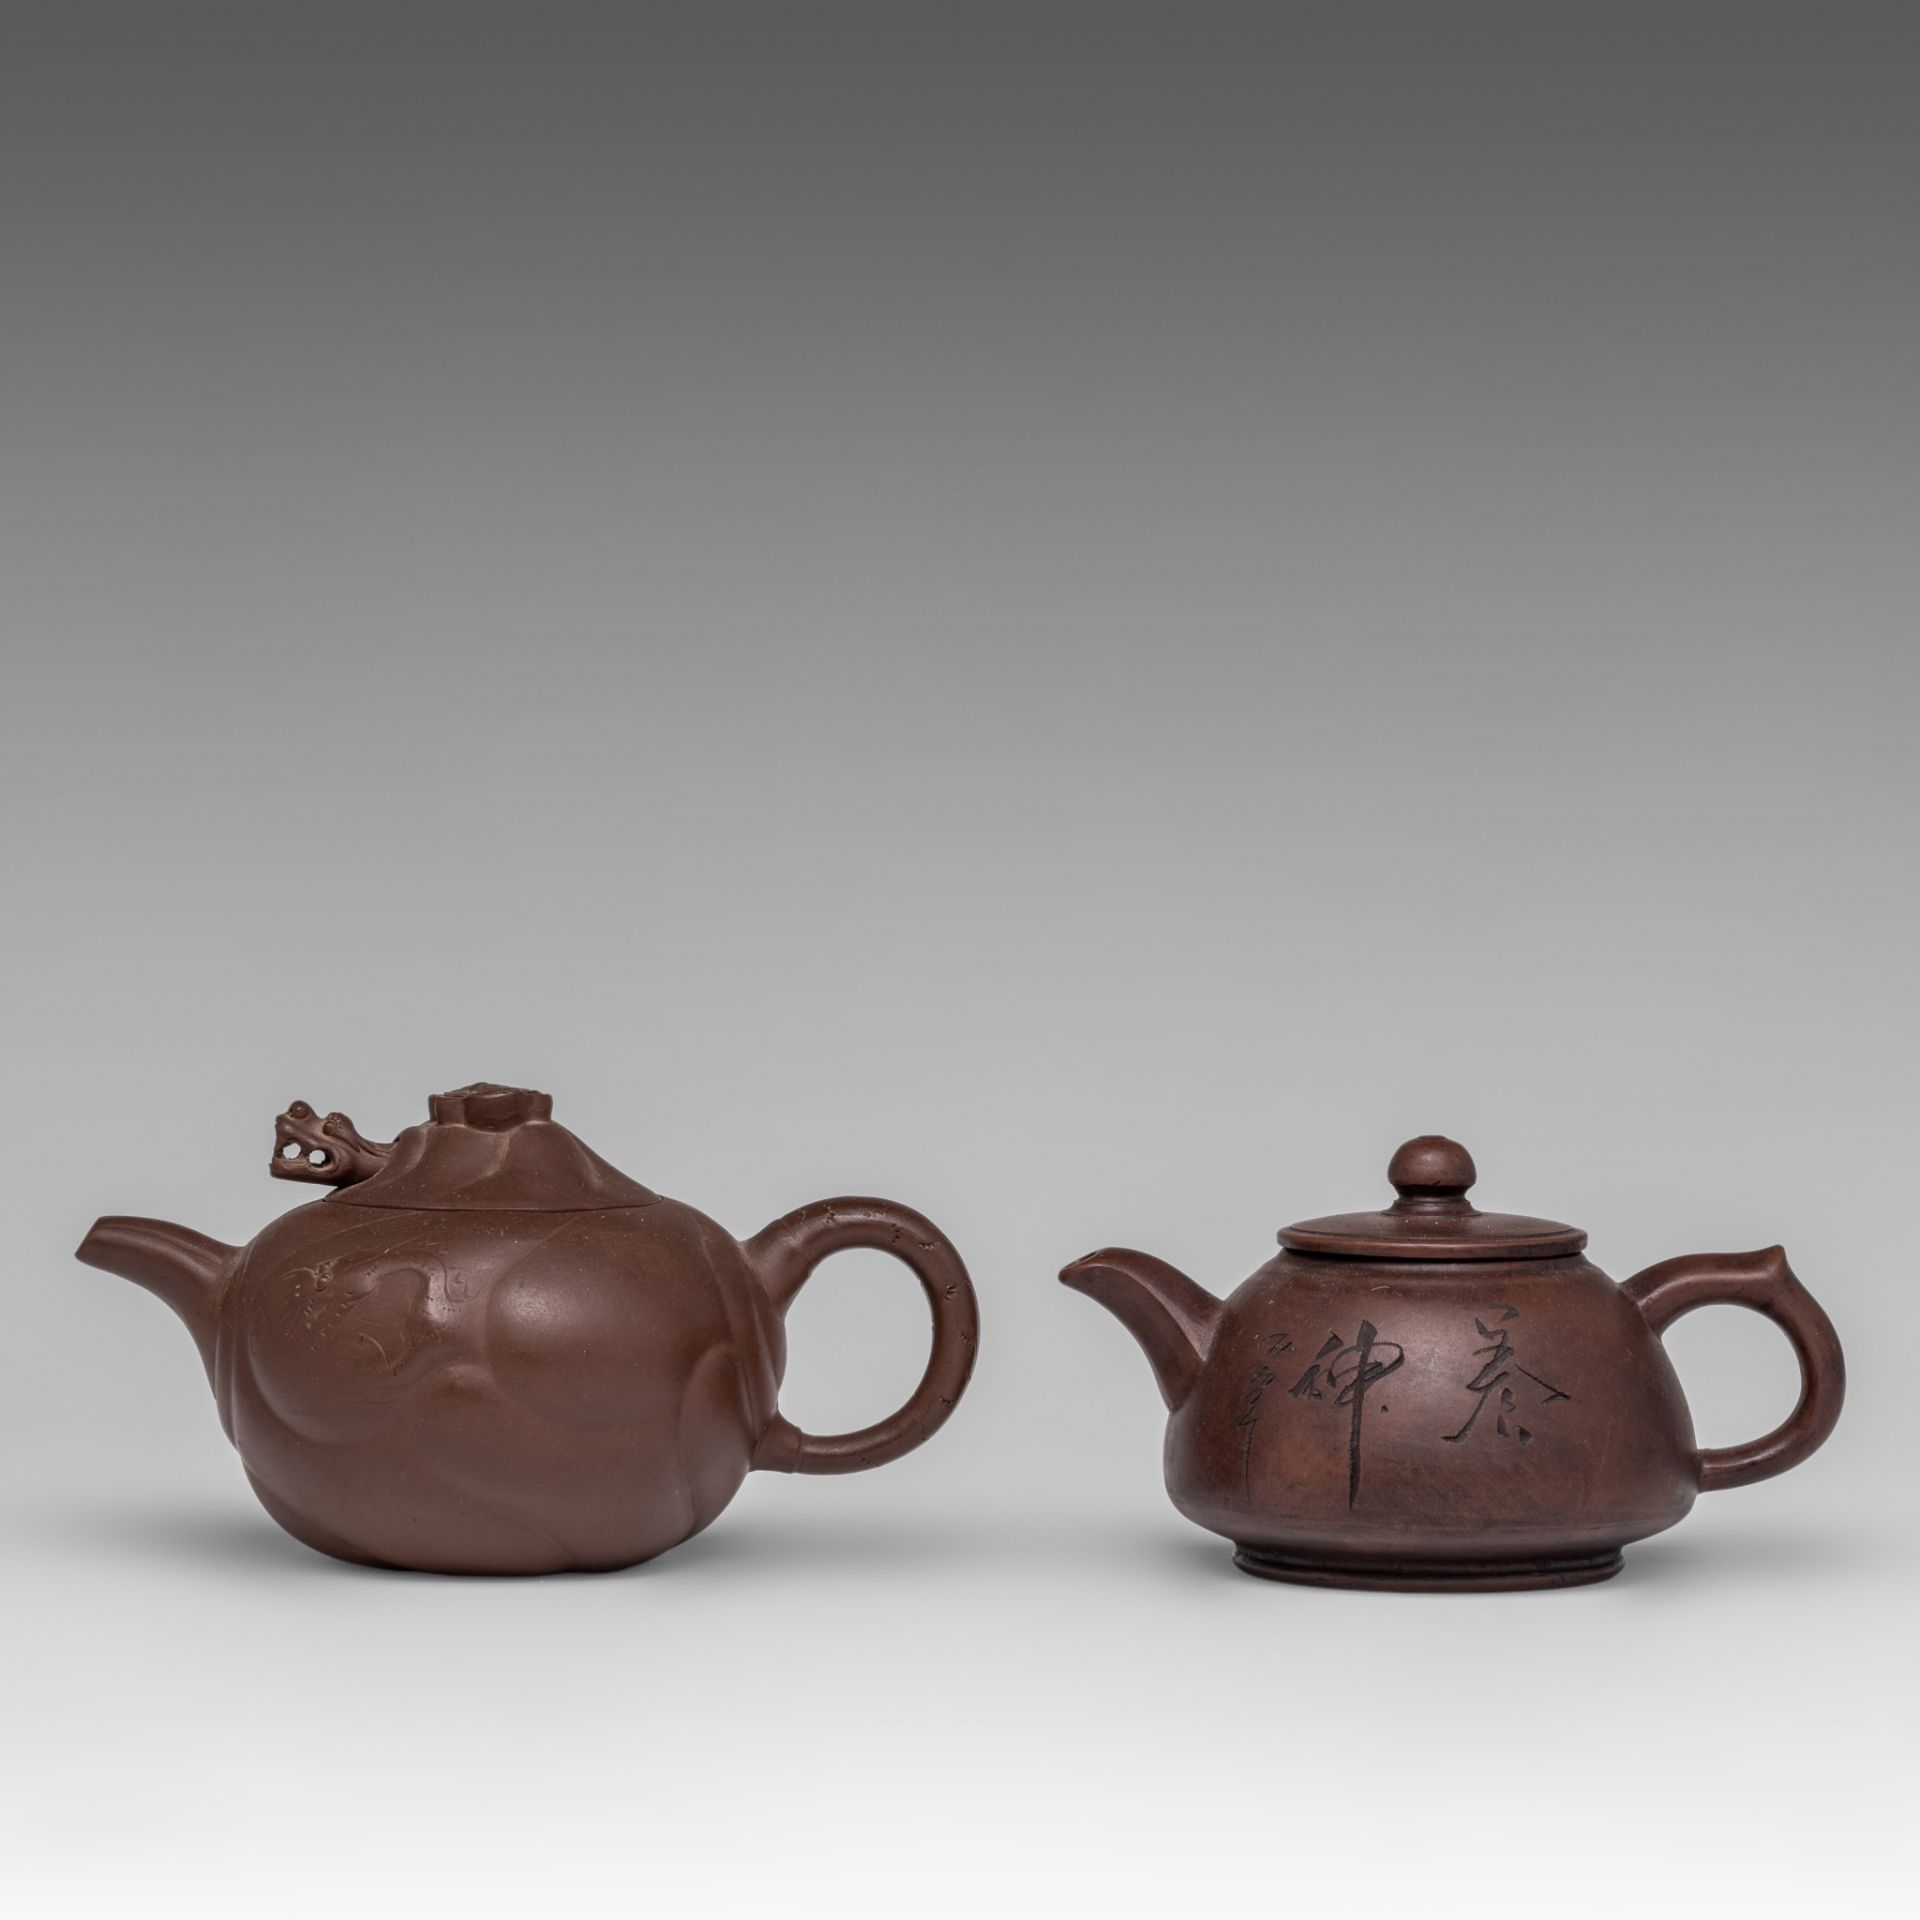 Two Chinese zhisha teapots, 20thC, L 17 - H 10,5 cm / L 20,5 - H 11,5 cm - Bild 2 aus 9